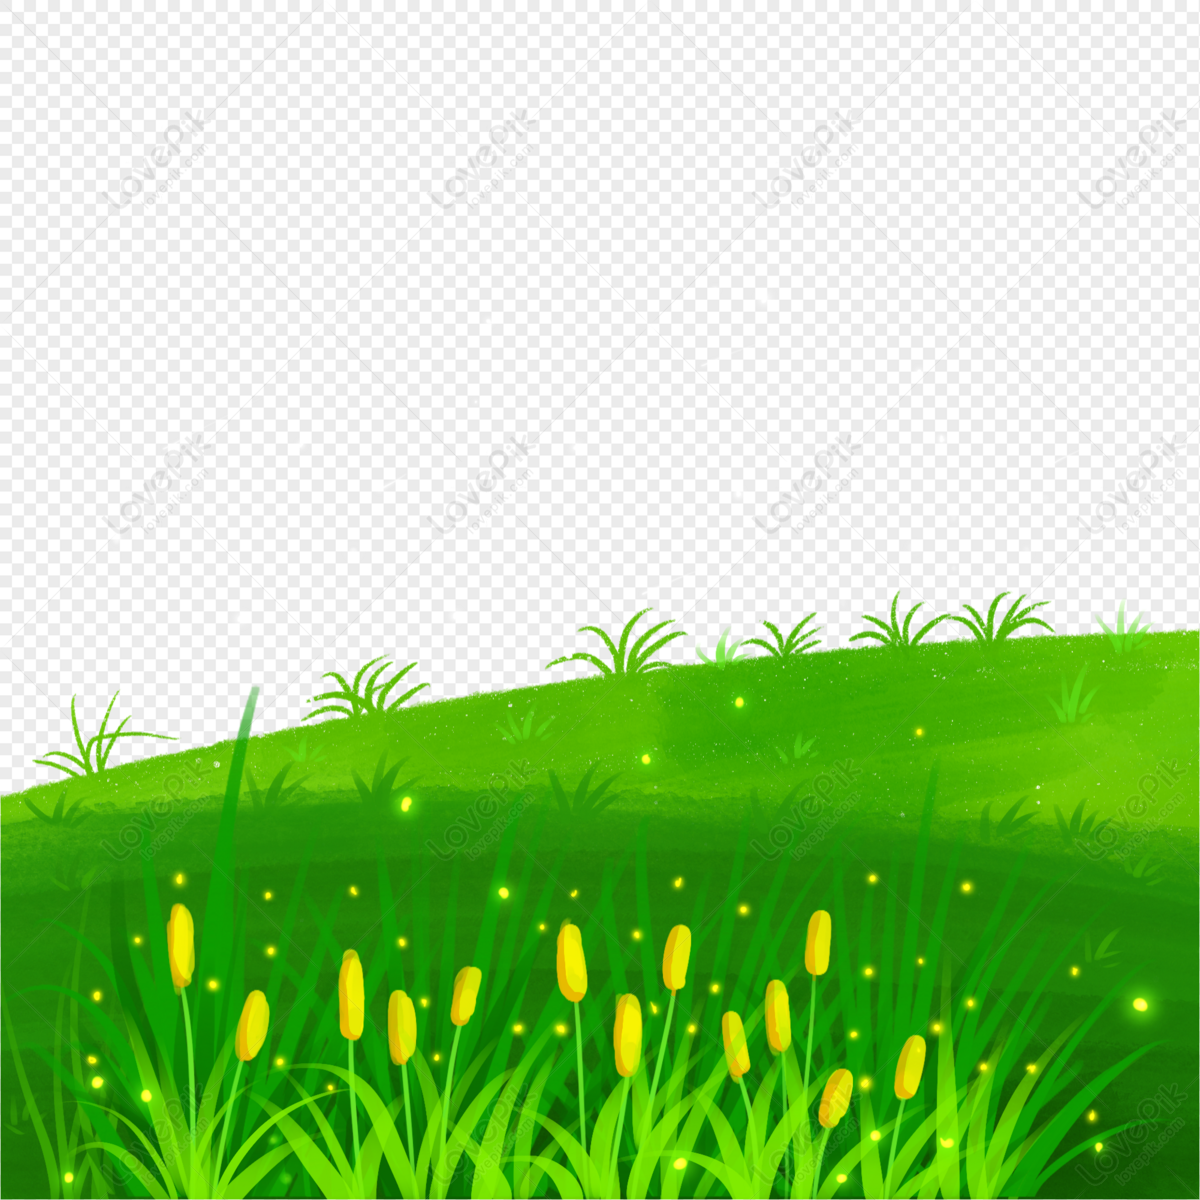 Bạn đang muốn tìm kiếm hình ảnh cây cỏ đẹp mắt để thêm vào bộ sưu tập của mình? Đừng bỏ qua cơ hội sở hữu hình ảnh cây cỏ PNG miễn phí có chất lượng cực tốt. Với nhiều loại cây và cỏ khác nhau, bạn có thể tìm thấy những hình ảnh mang đến sự tươi mới cho không gian làm việc hoặc nét đẹp tự nhiên cho thiết kế của bạn.